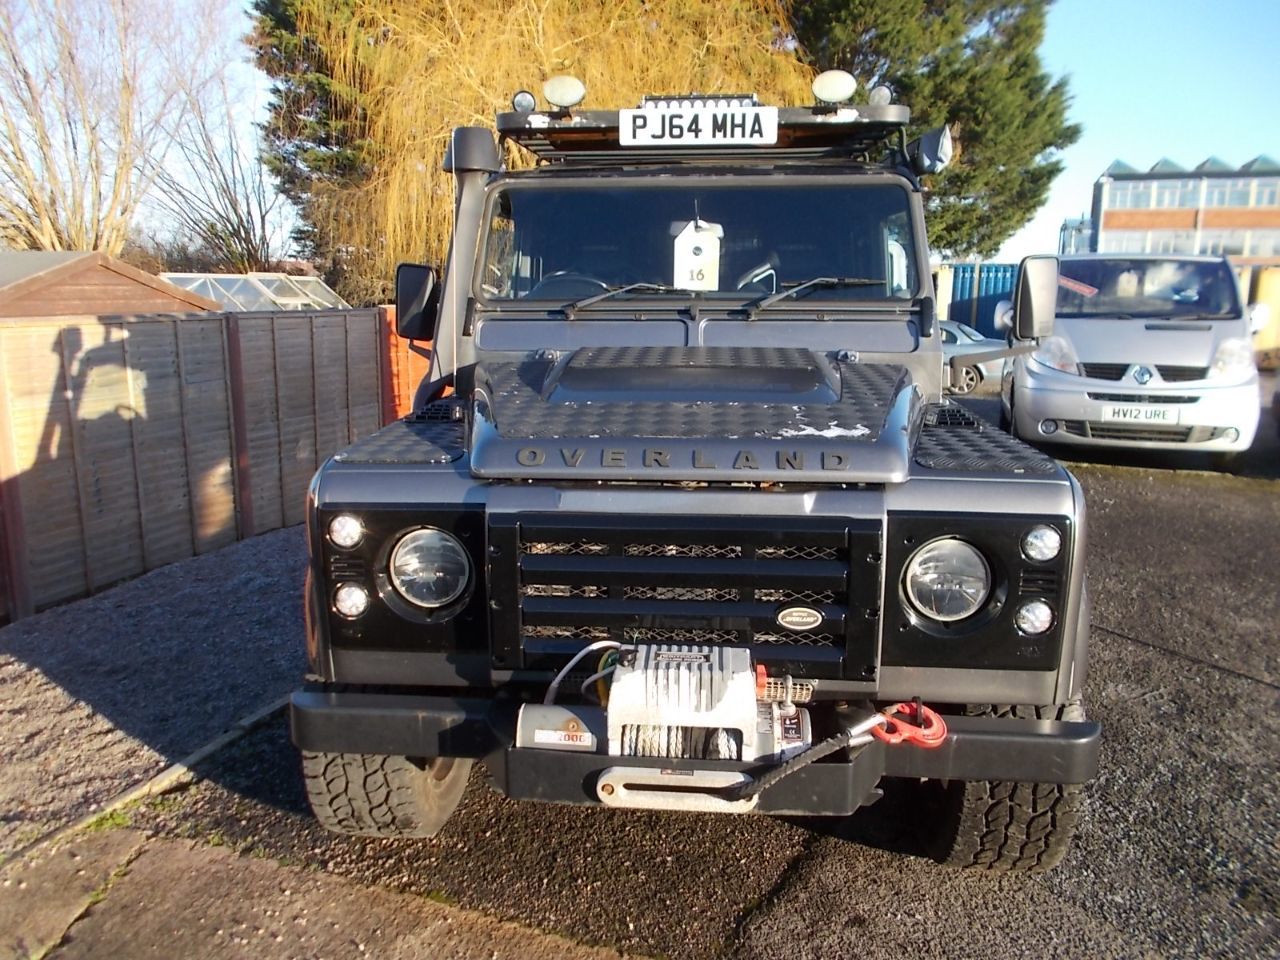 2014 Land Rover Defender